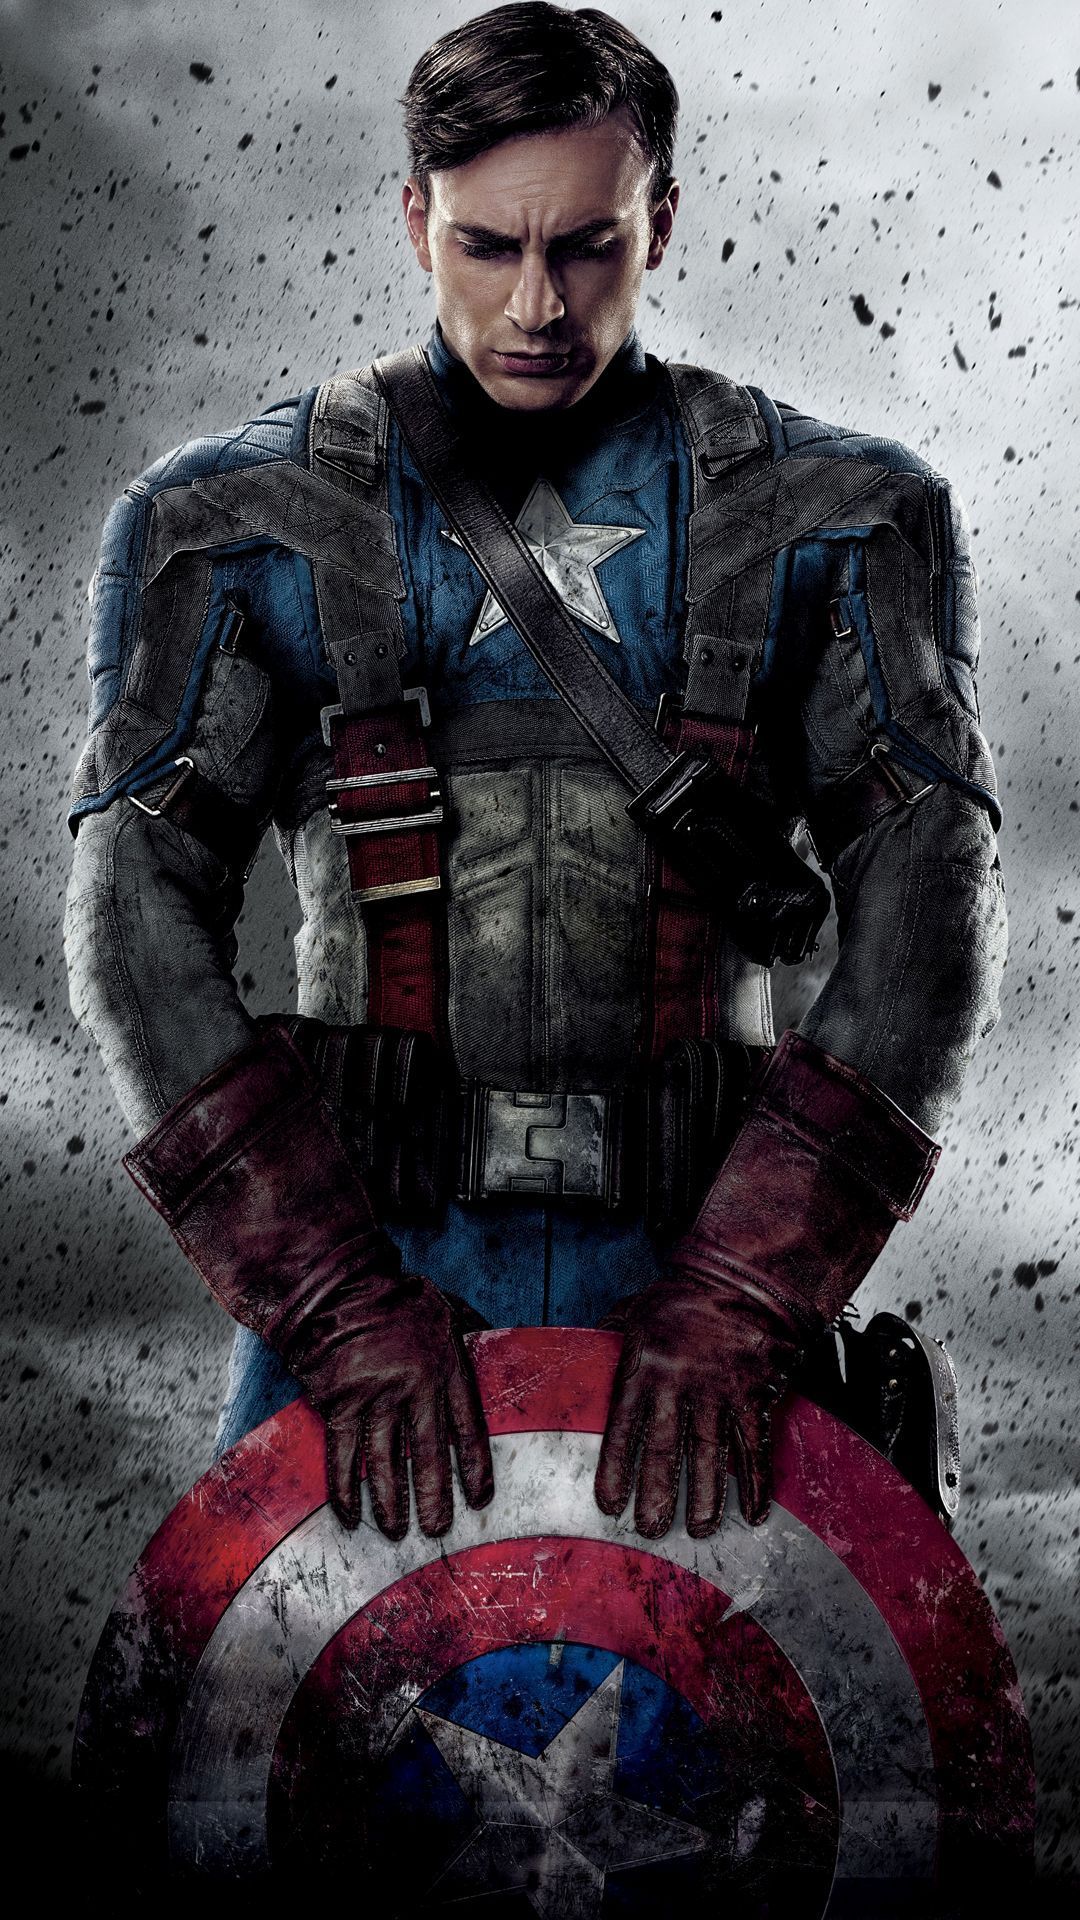 Hình ảnh Captain Marvel đẹp chất nhất dành tặng fan